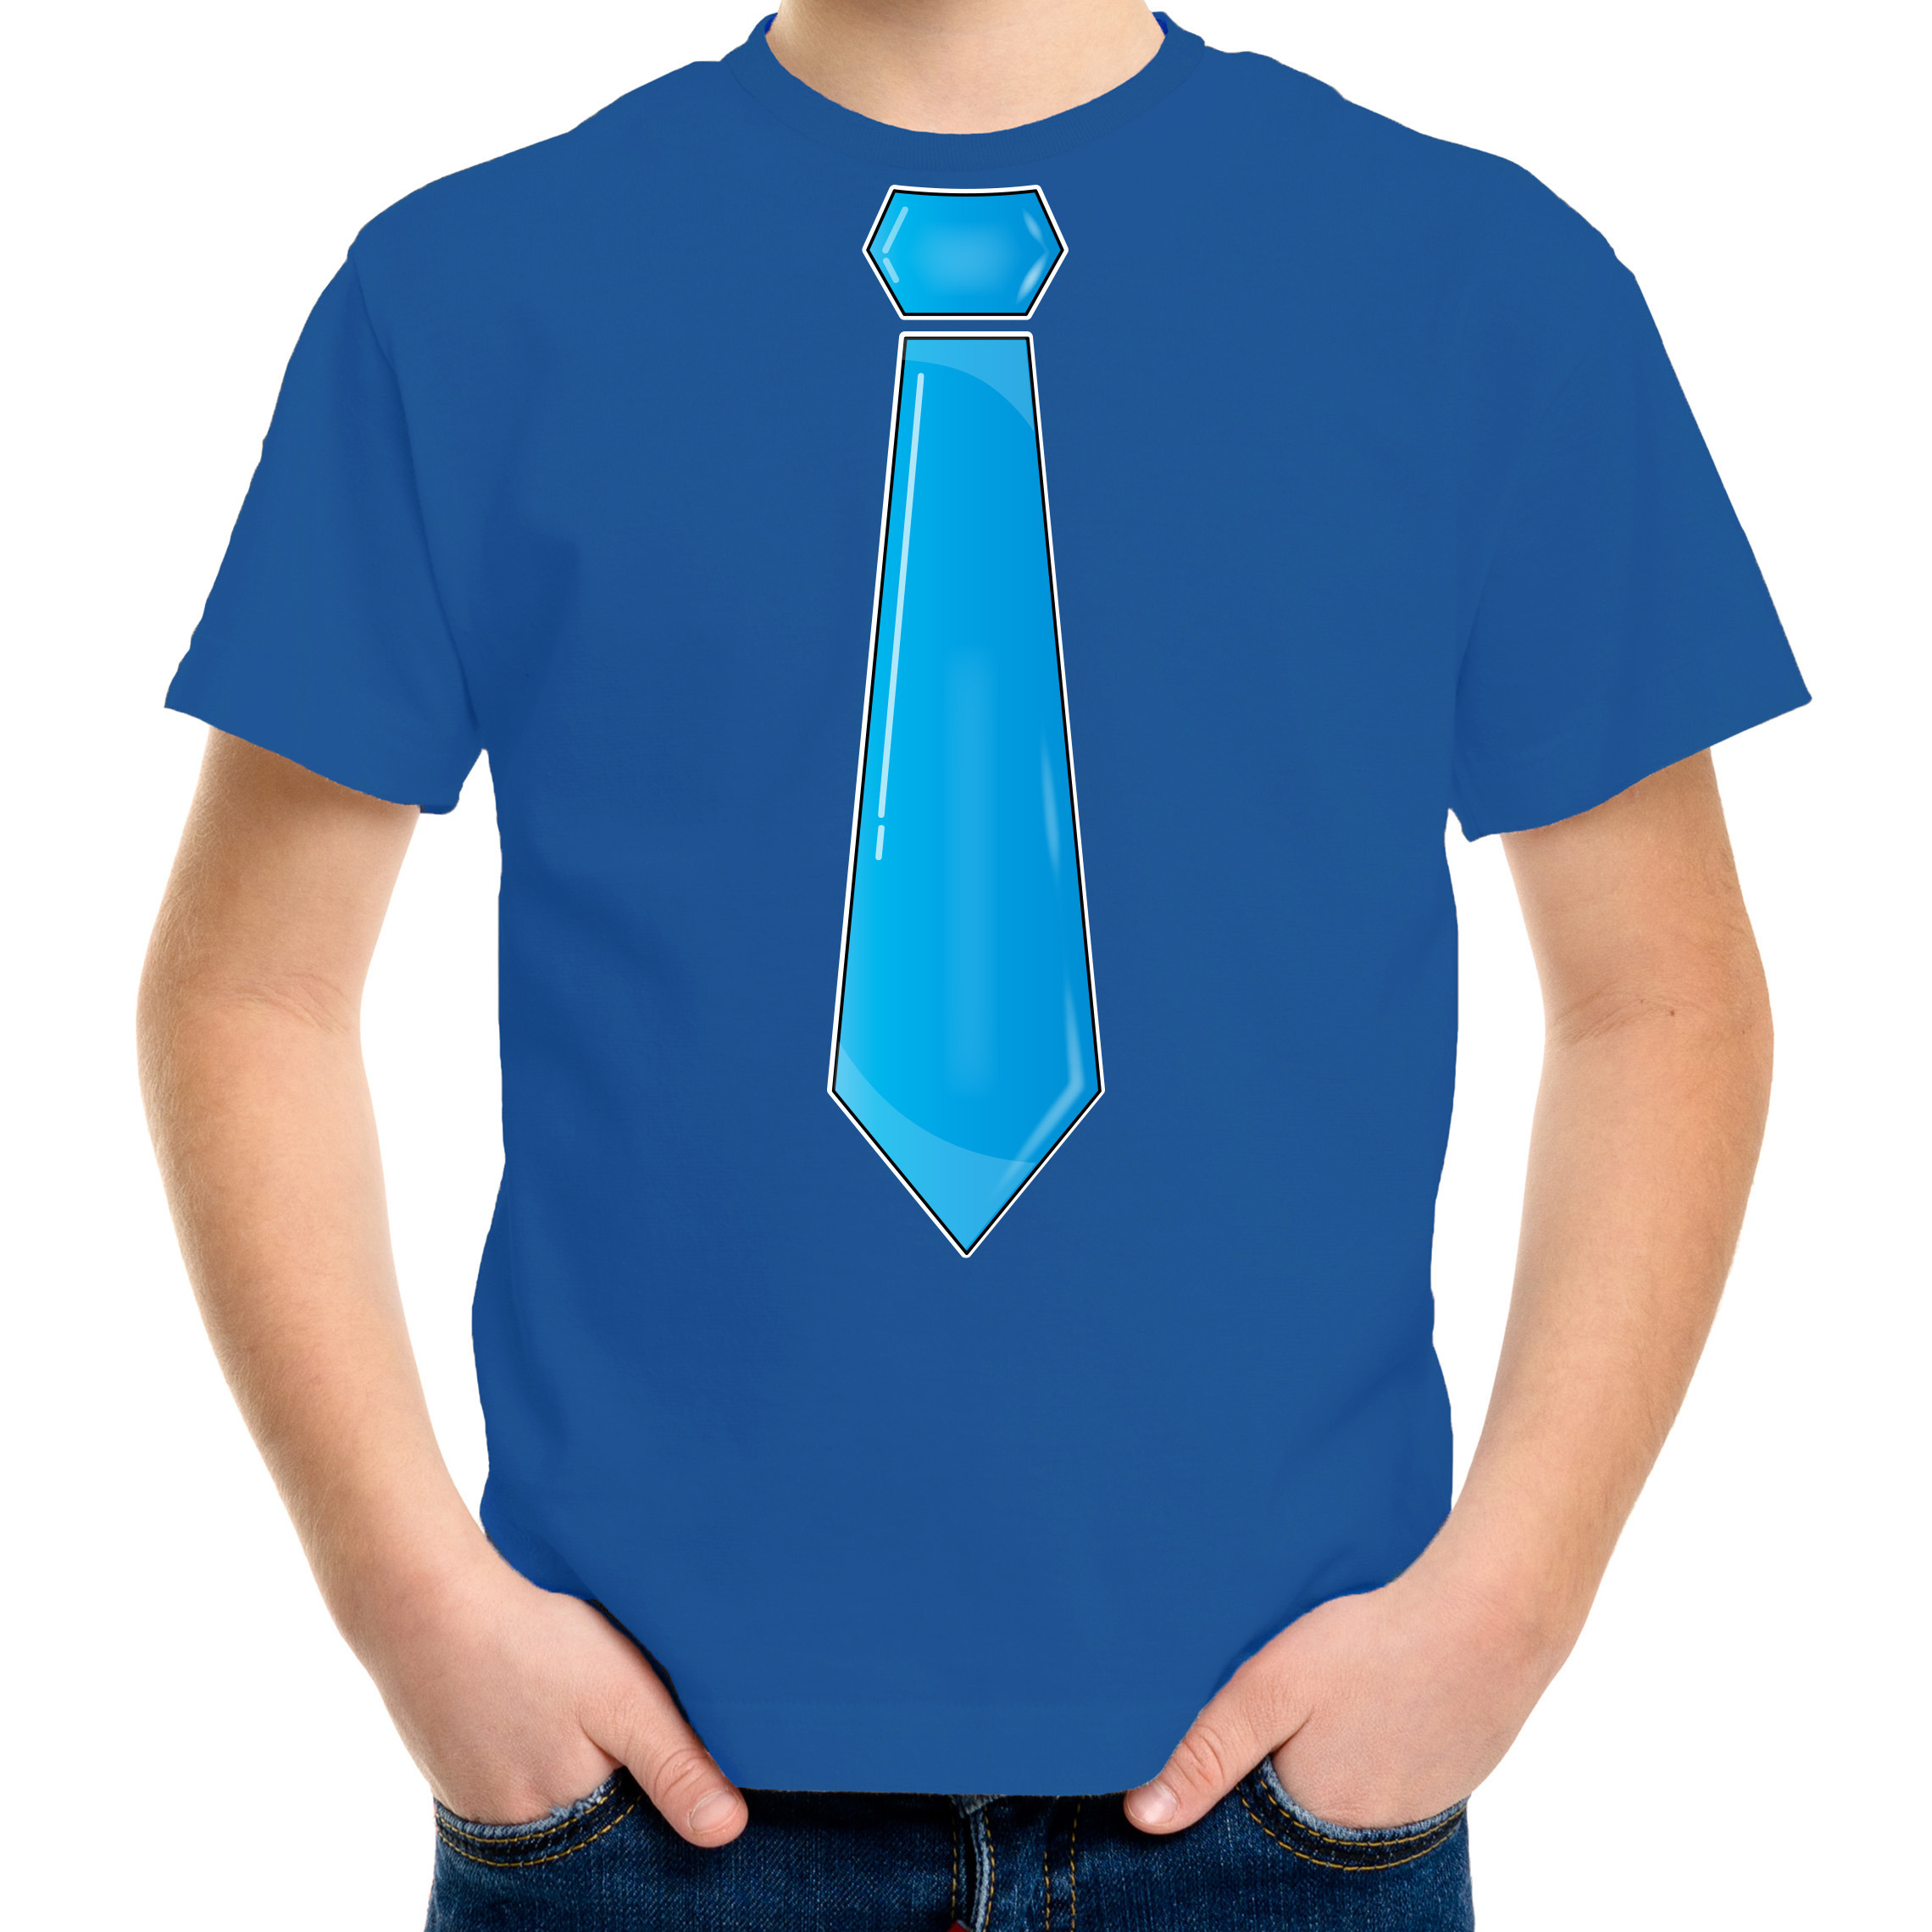 Verkleed t-shirt voor kinderen stropdas blauw jongen carnaval-themafeest kostuum